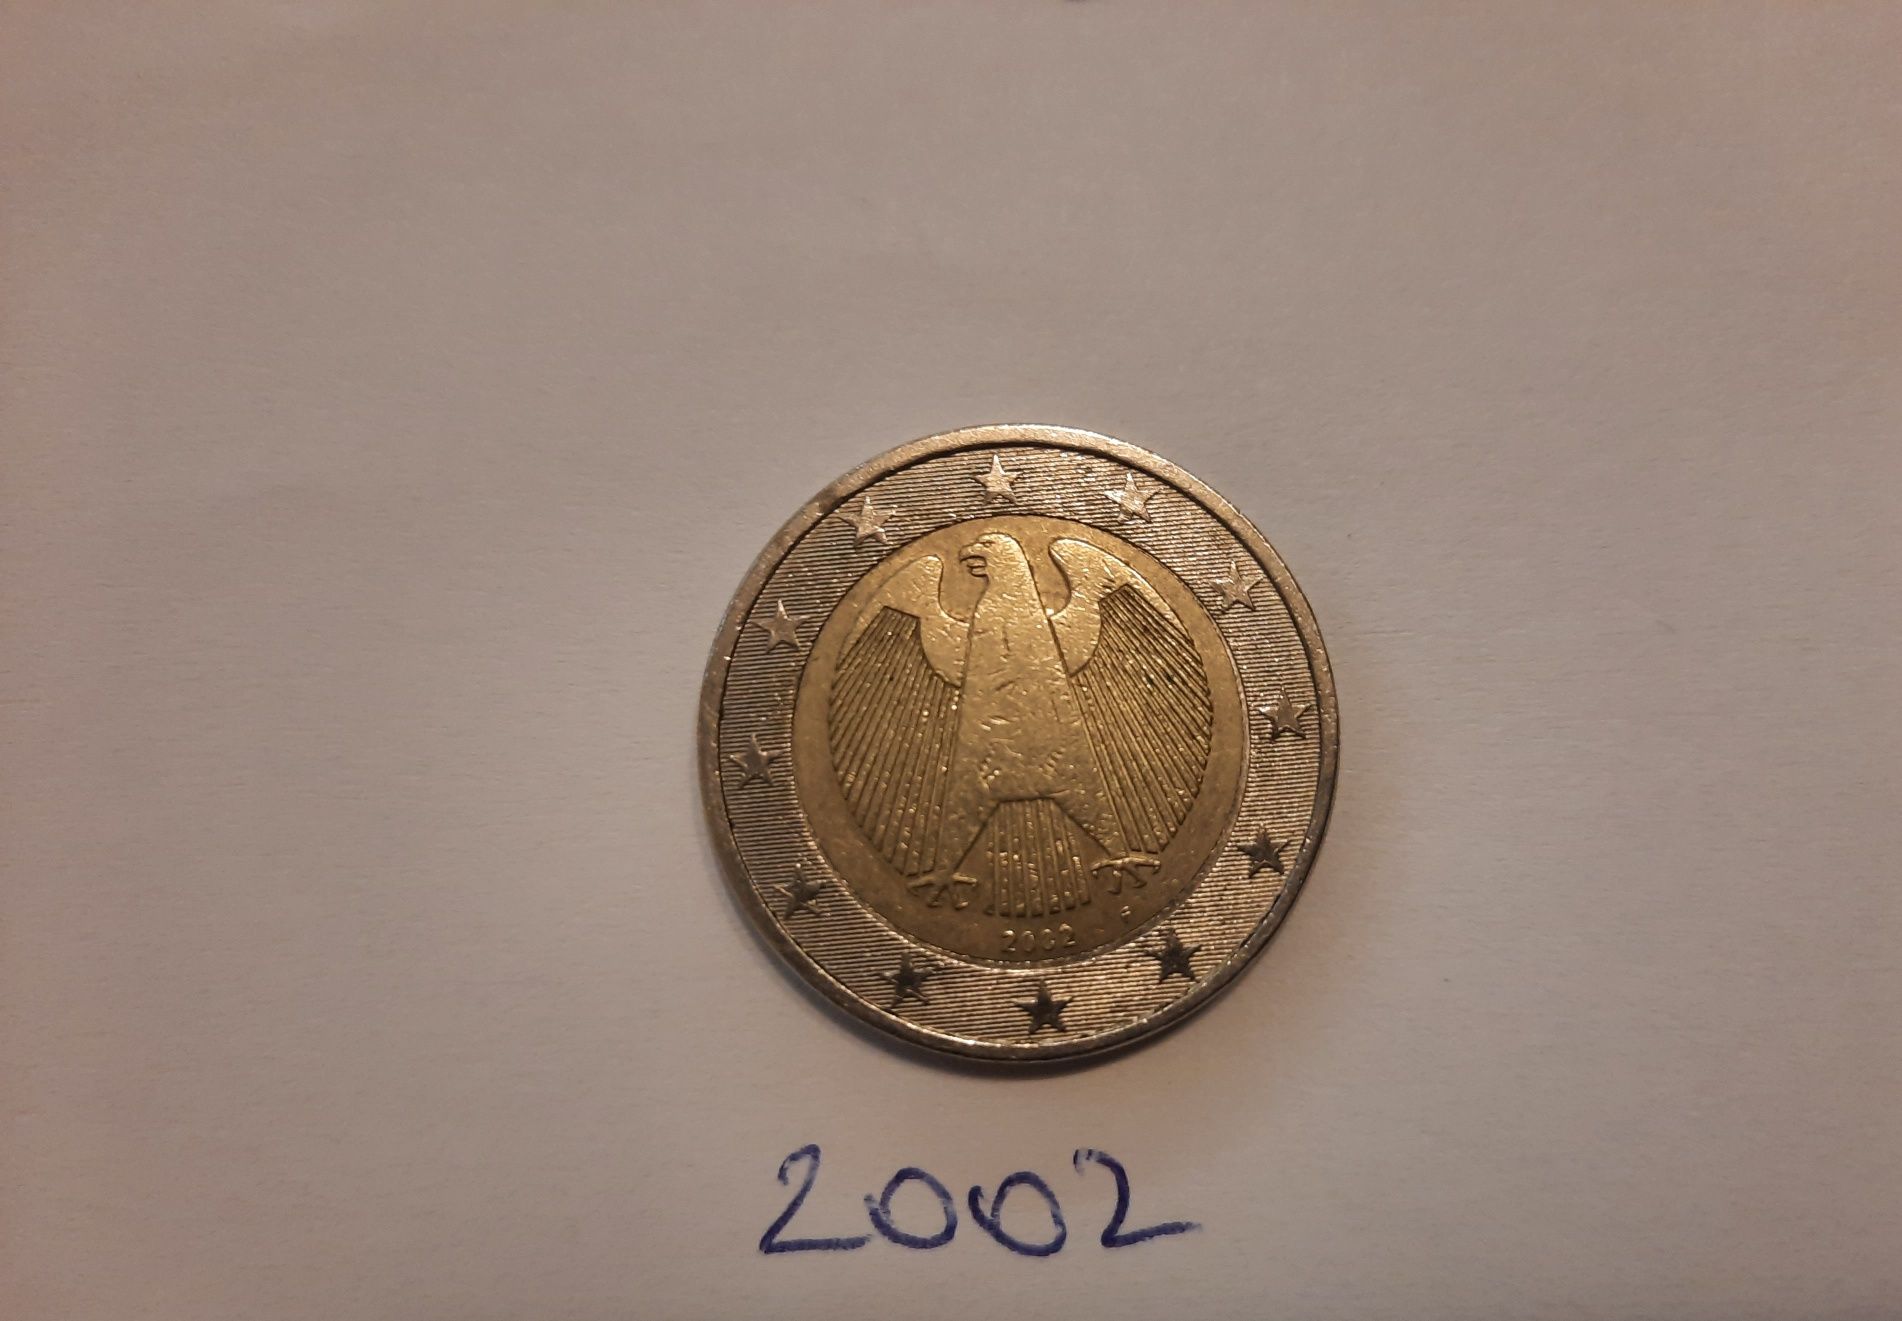 Monede de colecție 2 euro 2002 și 1 euro